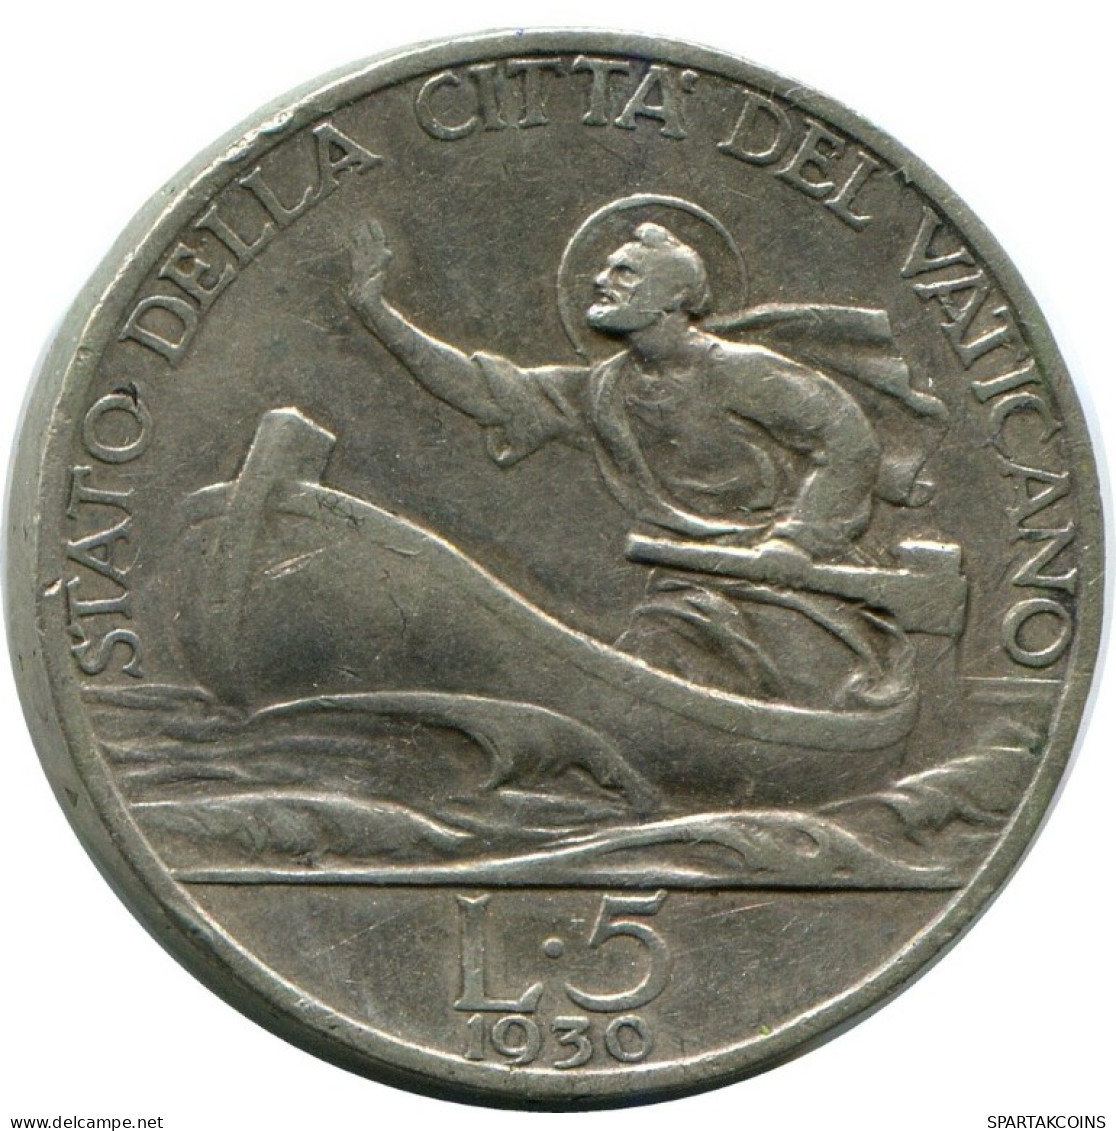 5 LIRE 1930 VATICAN Coin Pius XI (1922-1939) Silver #AH332.16.U.A - Vaticano